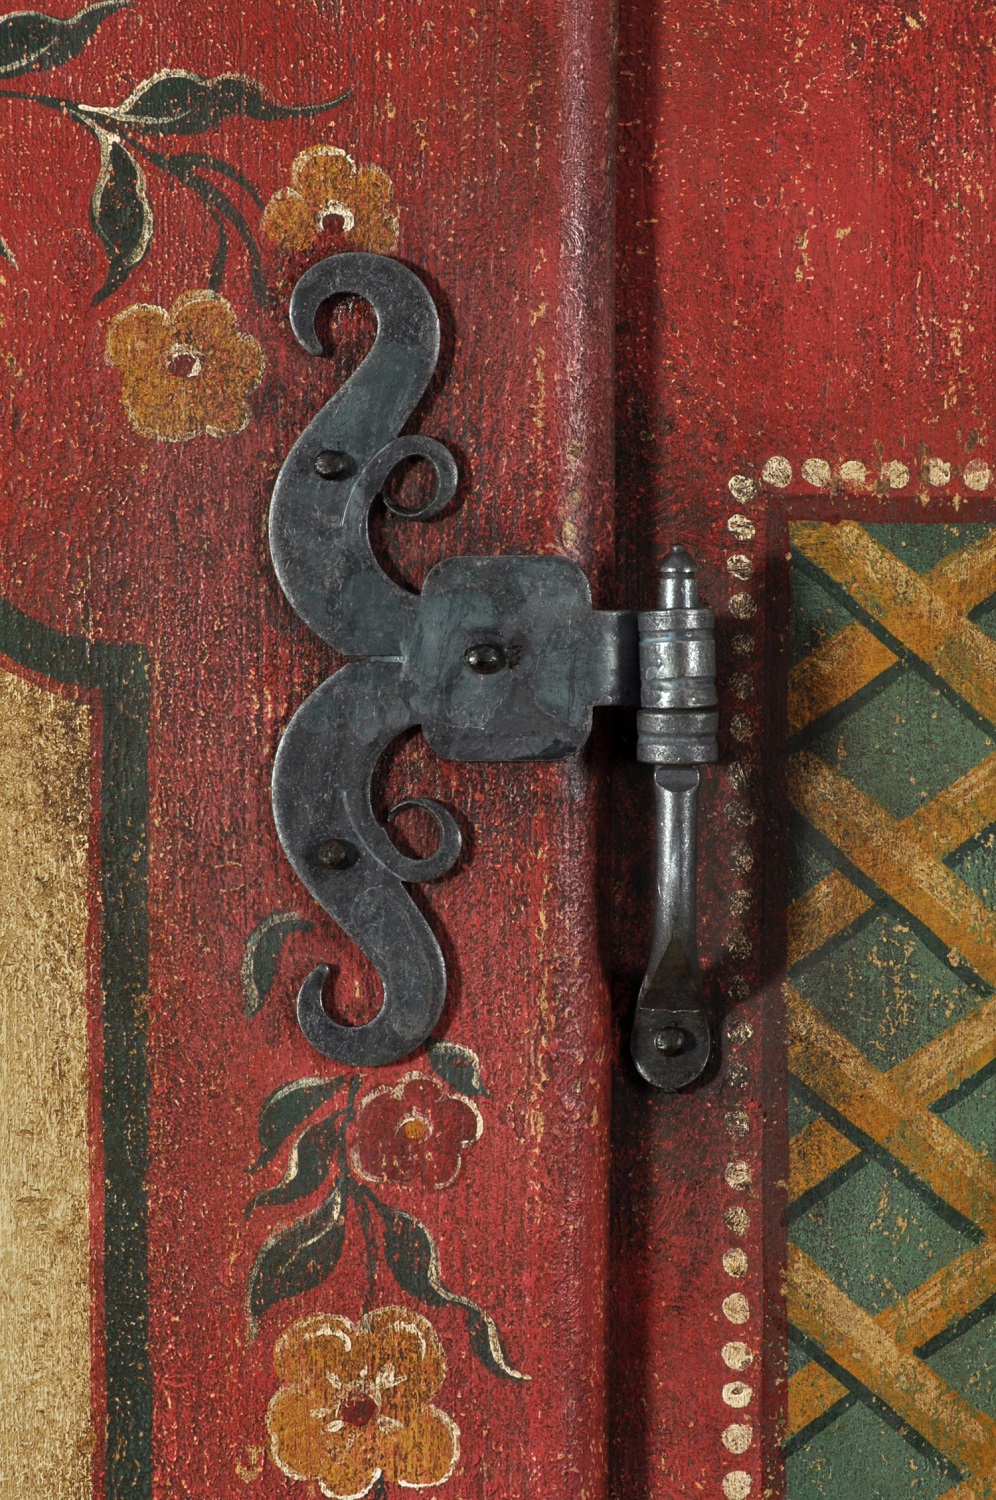 armadio tirolese con cerniere in ferro battuto forgiate a caldo a mano in stile classico barocco tirolese del 1600 lavorazioni e accessori di lusso made in Italy